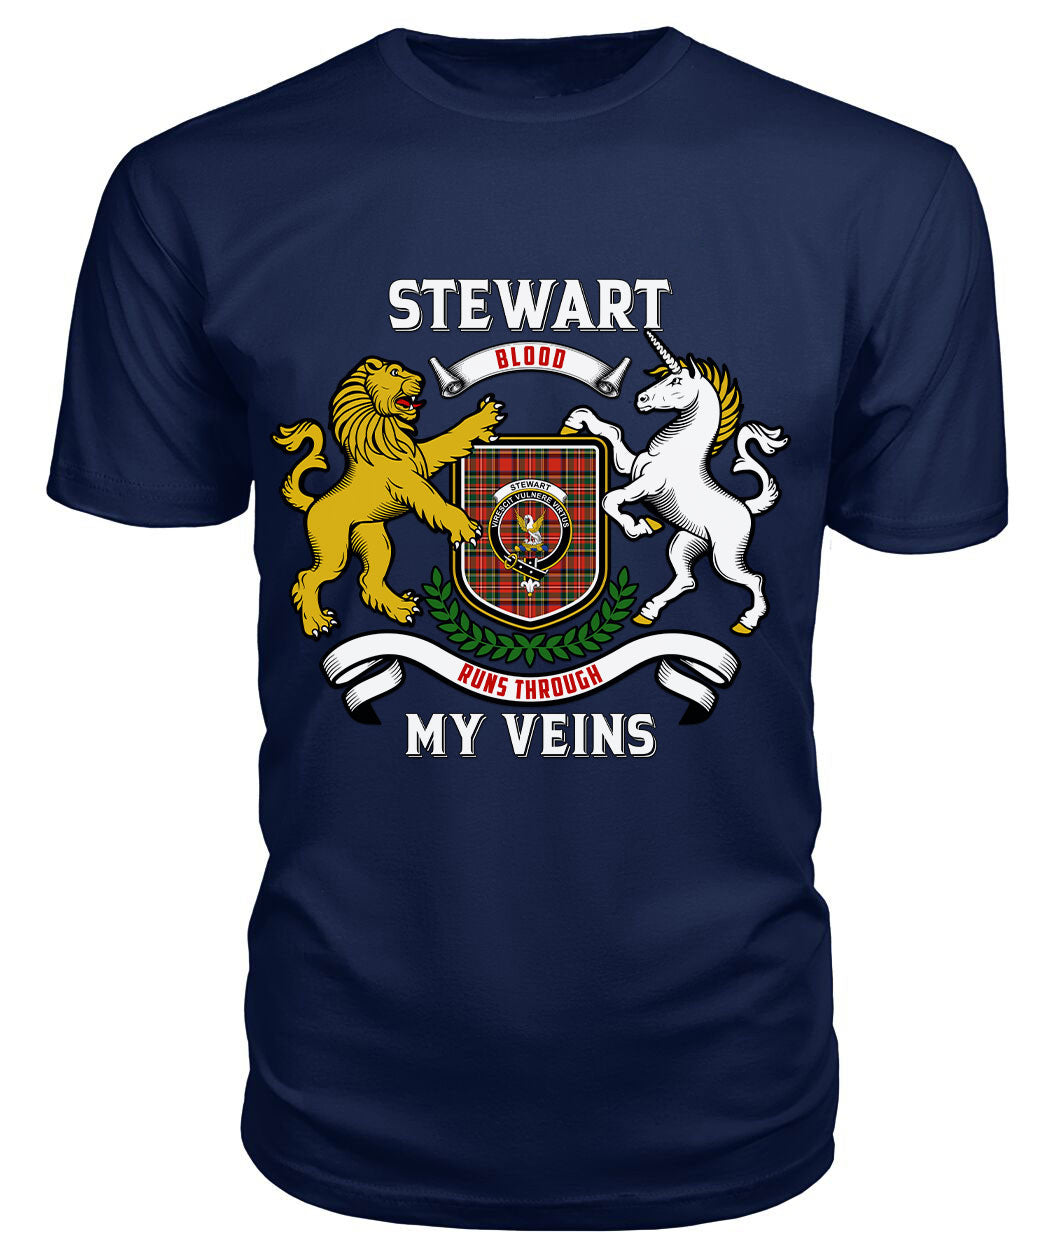 Stewart Royal Modern Tartan Crest 2D T-shirt - Blood Runs Through My Veins Style